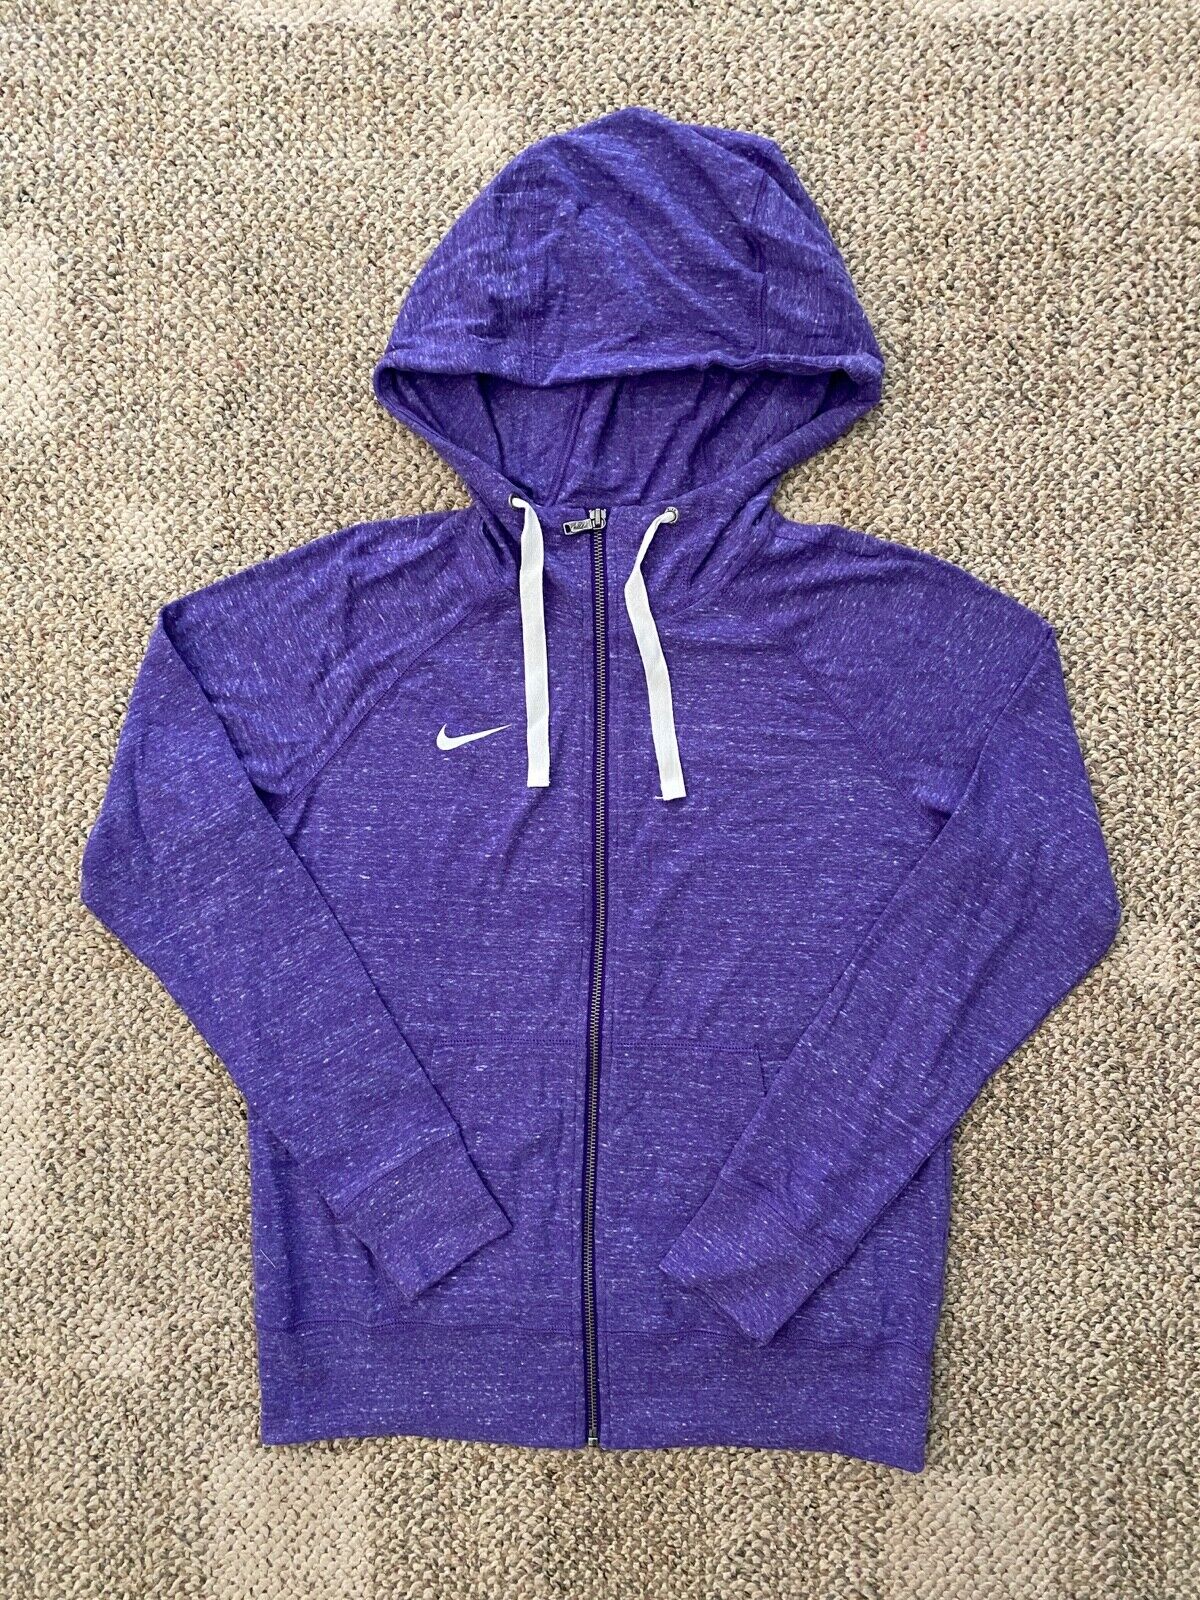 Women's M Nike Gym Vintage Full Zip Hoodie Lightweight Sweatshirt Jacket  Purple 820652289529 | eBay